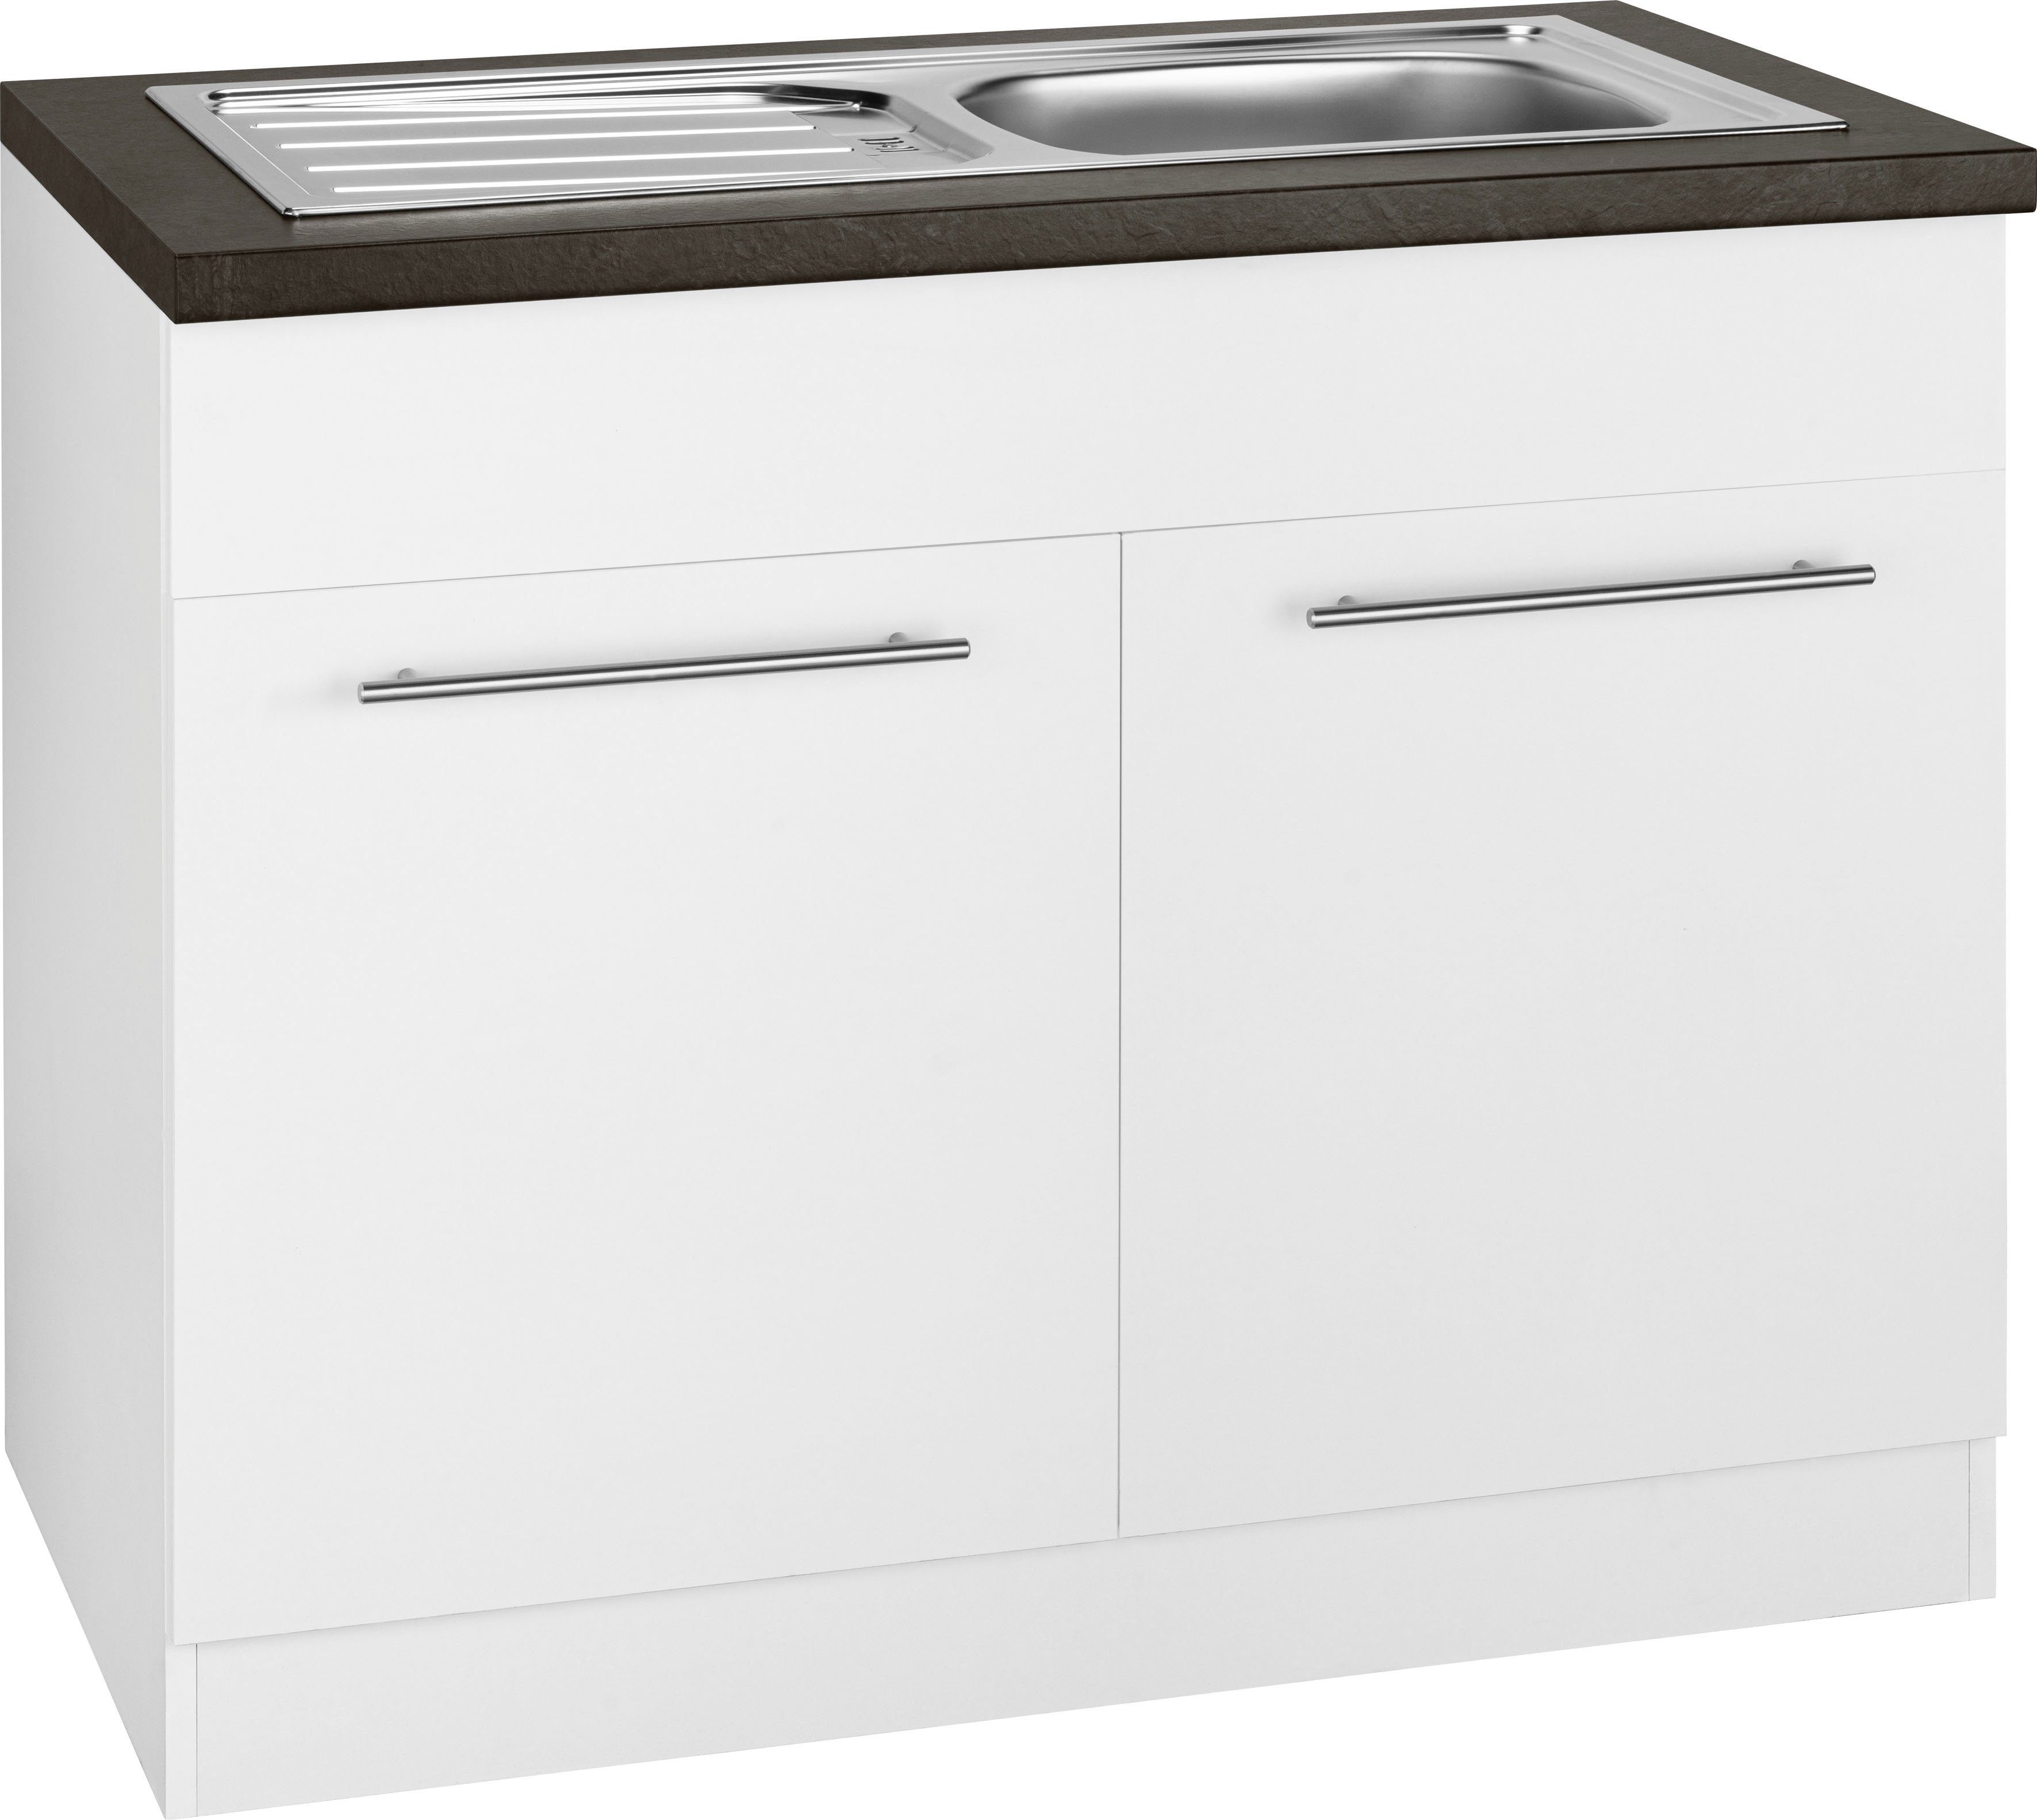 wiho Küchen Spülenschrank Unna 100 cm breit weiß/granit schwarz | Weiß | Spülenschränke